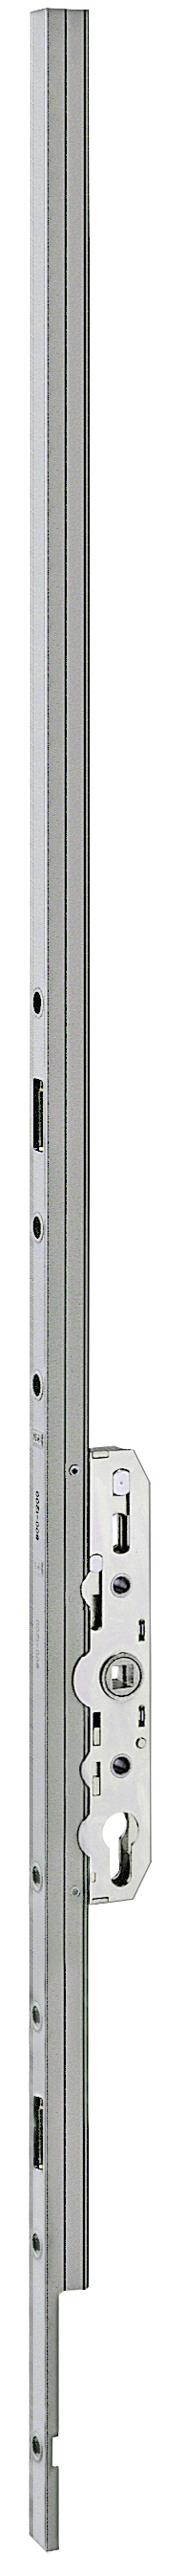 AGB -  Cremonese ALZANTE CLIMATECH per alzante scorrevole altezza maniglia fissa con chiusura a perni - gr / dim. 01 - entrata 27,5 - lbb/hbb 800 - 1200